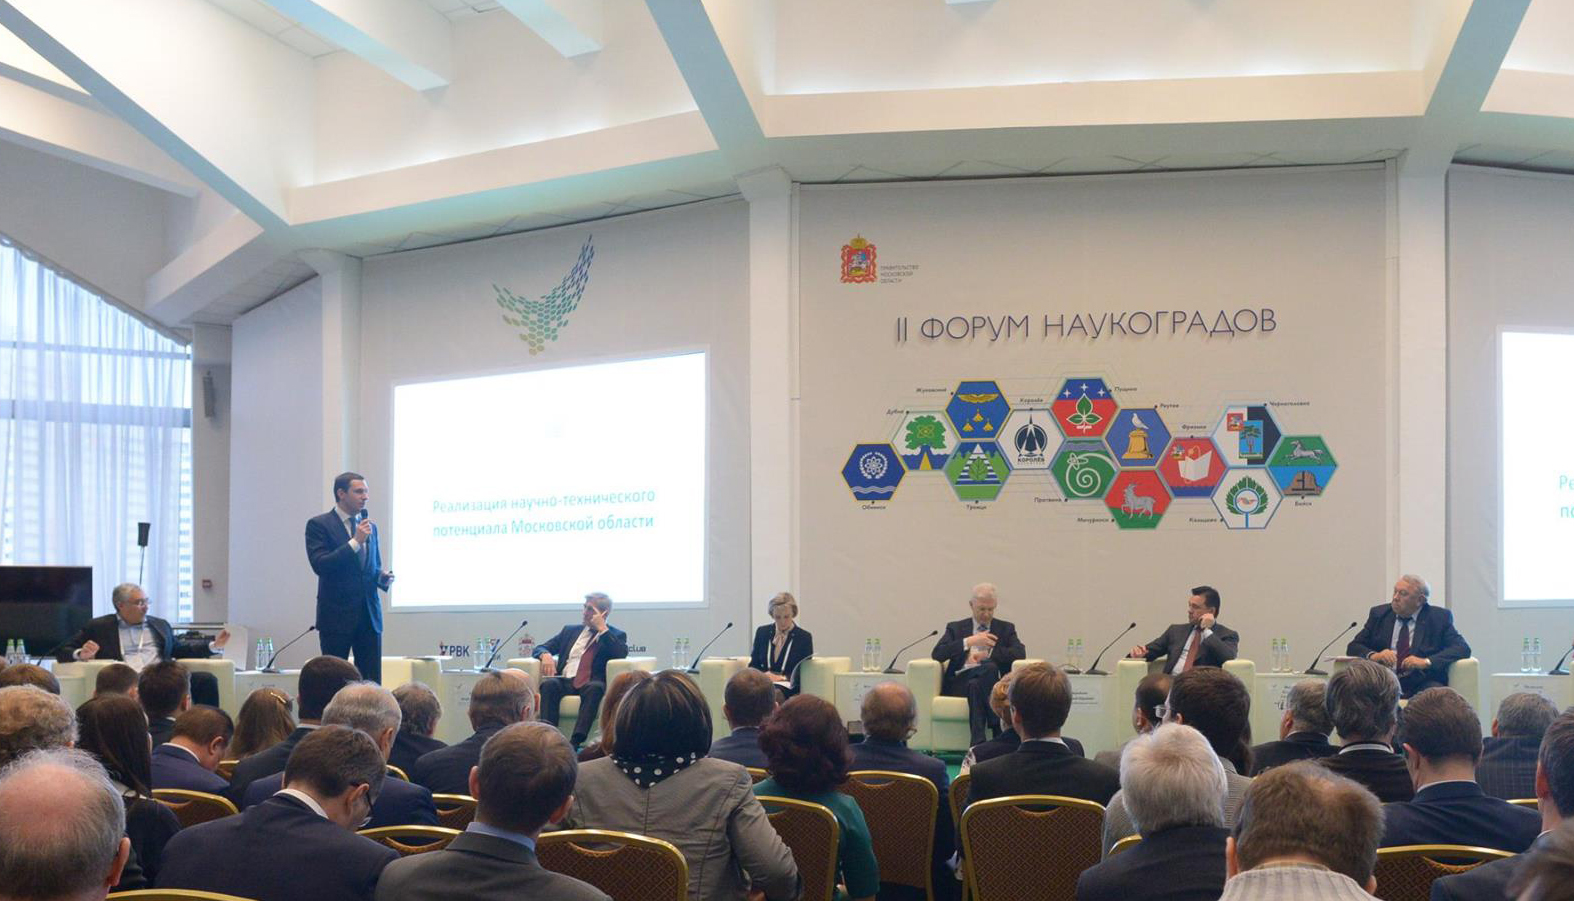 Eröffnung des Forums im Regierungsgebäude der Moskauer Region